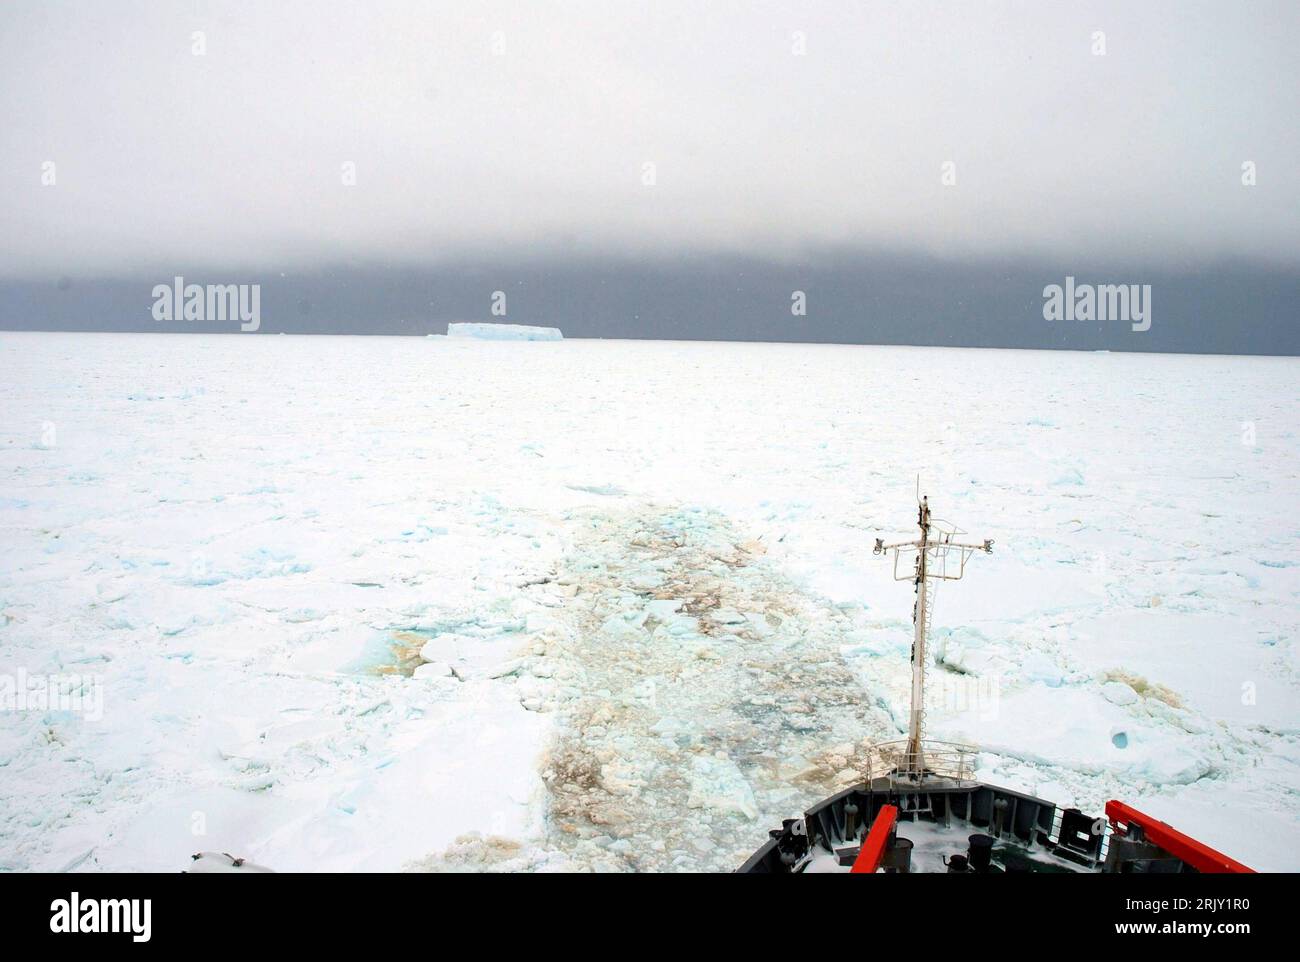 Eisbrecher - Xuelong - bricht das Eis der Antarktis PUBLICATIONxNOTxINxCHN   Icebreaker XUELONG breaks the Ice the Antarctica PUBLICATIONxNOTxINxCHN Stock Photo